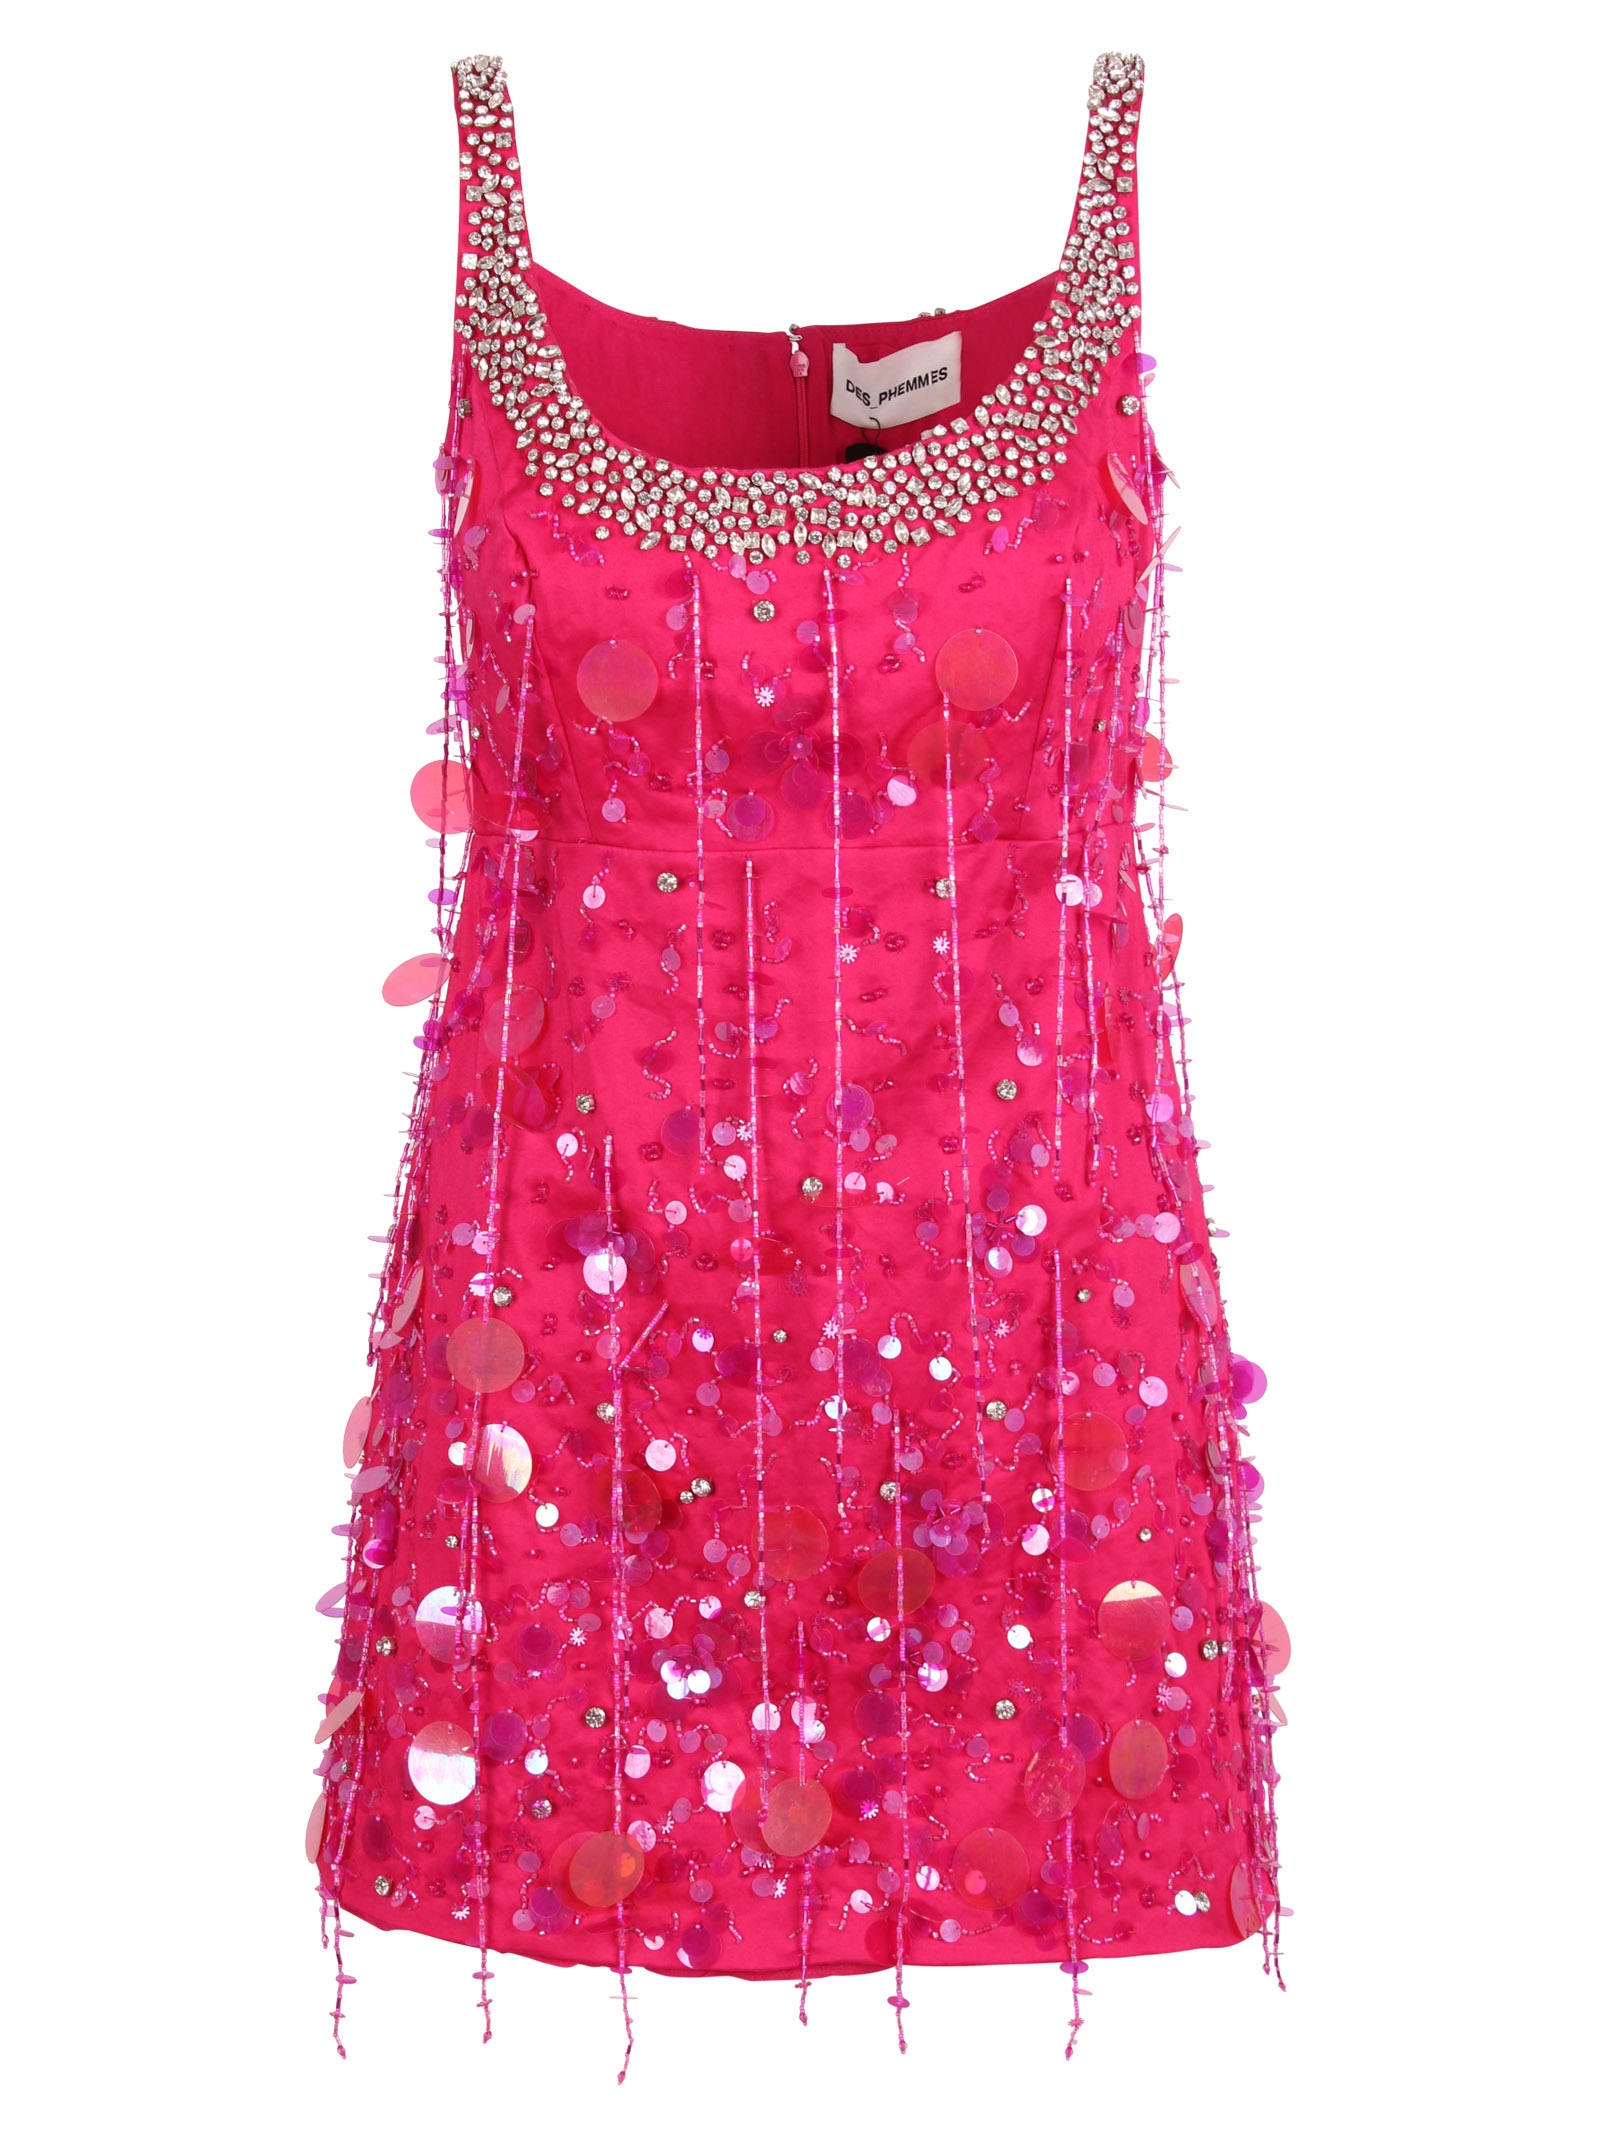 Des Phemmes Sequins And Crystals Embellished Short Dress